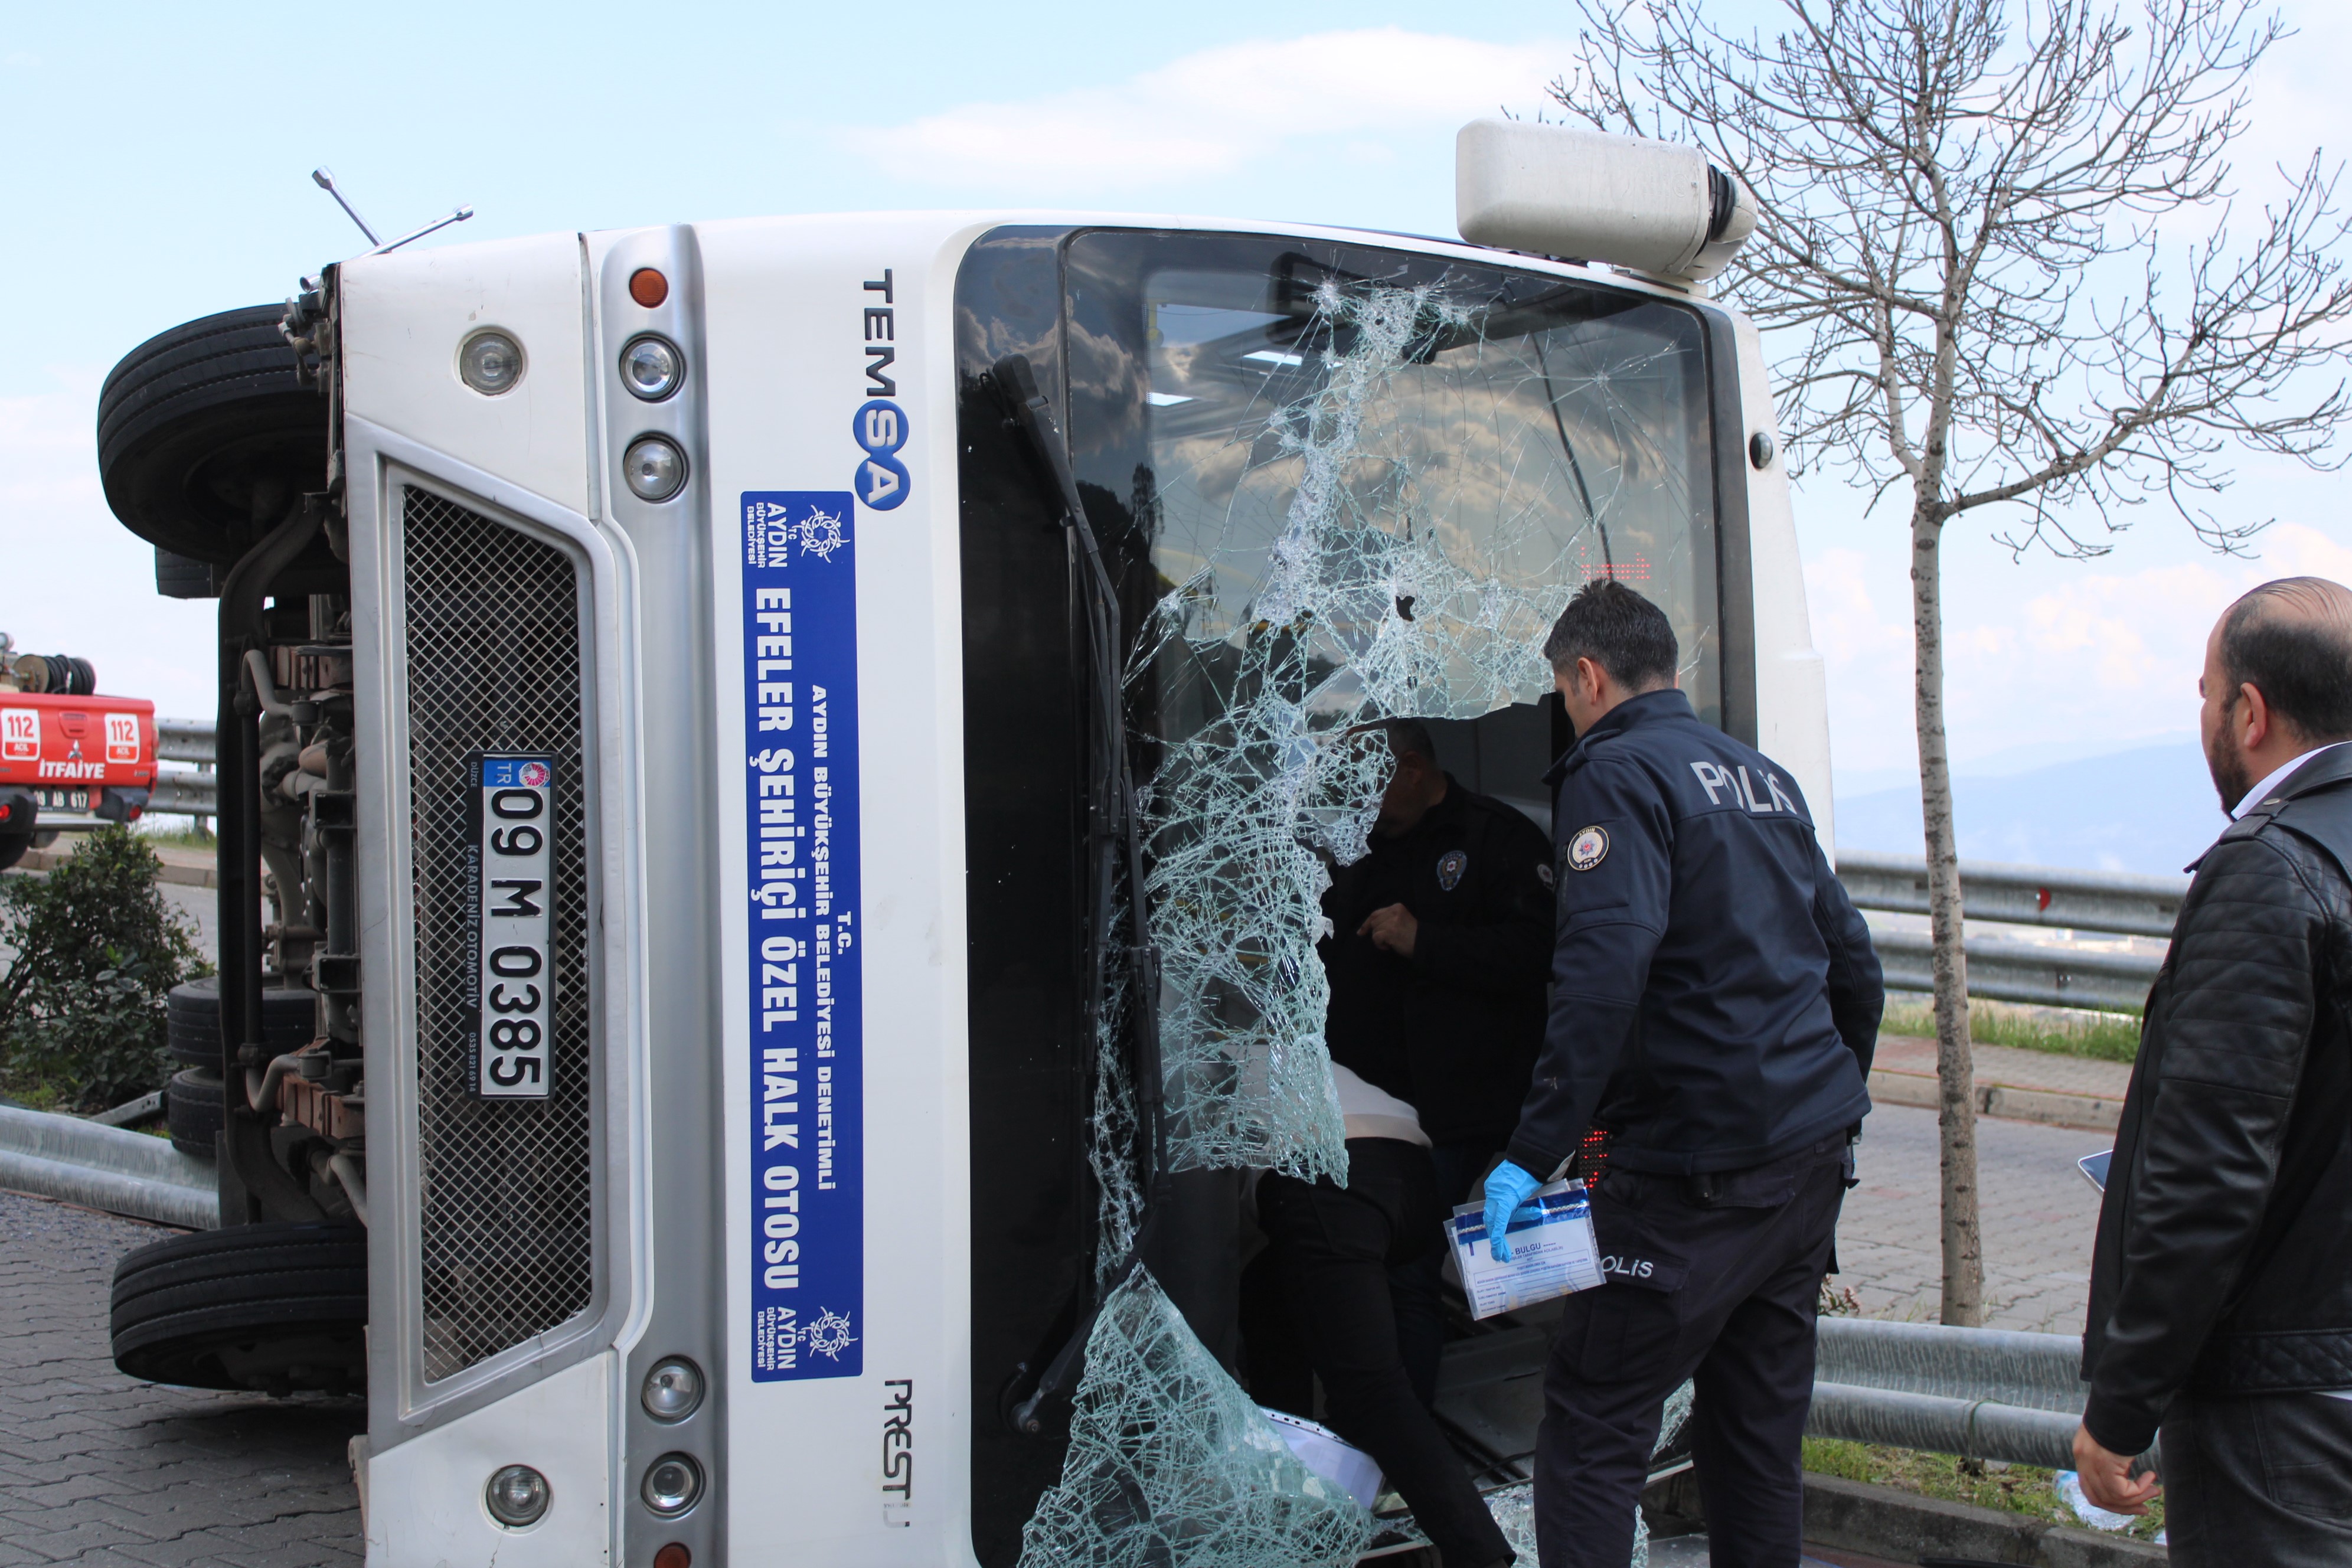 Aydın'da Can Pazarı Şehir Içi Yolcu Minibüsü Devrildi, Çok Sayıda Yaralı Var (2)